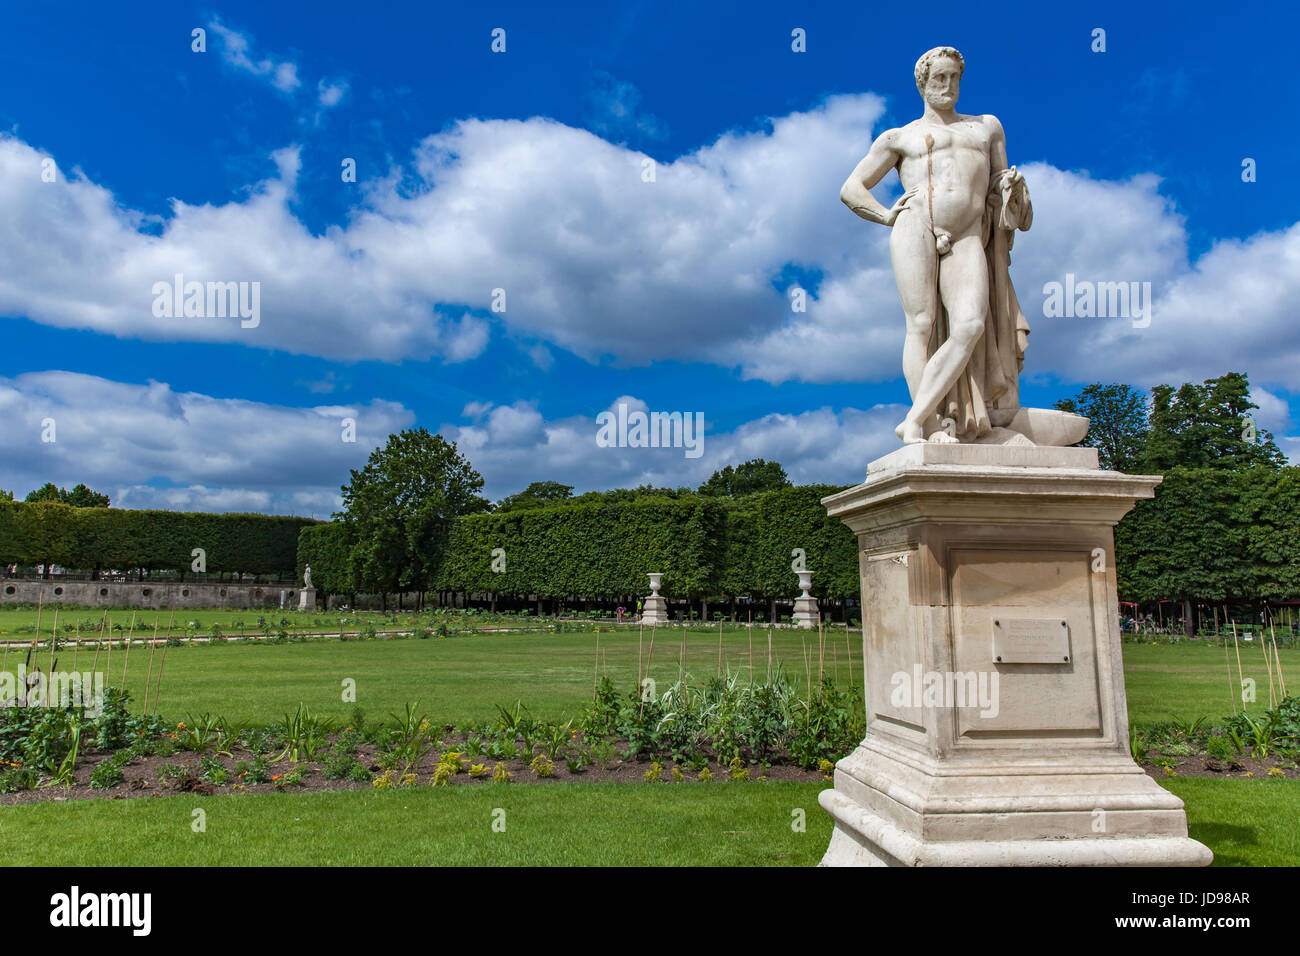 Sculpture Cincinnatus by Denis Foyatier from 1834 in Tuileries Garden in Paris, France Stock Photo